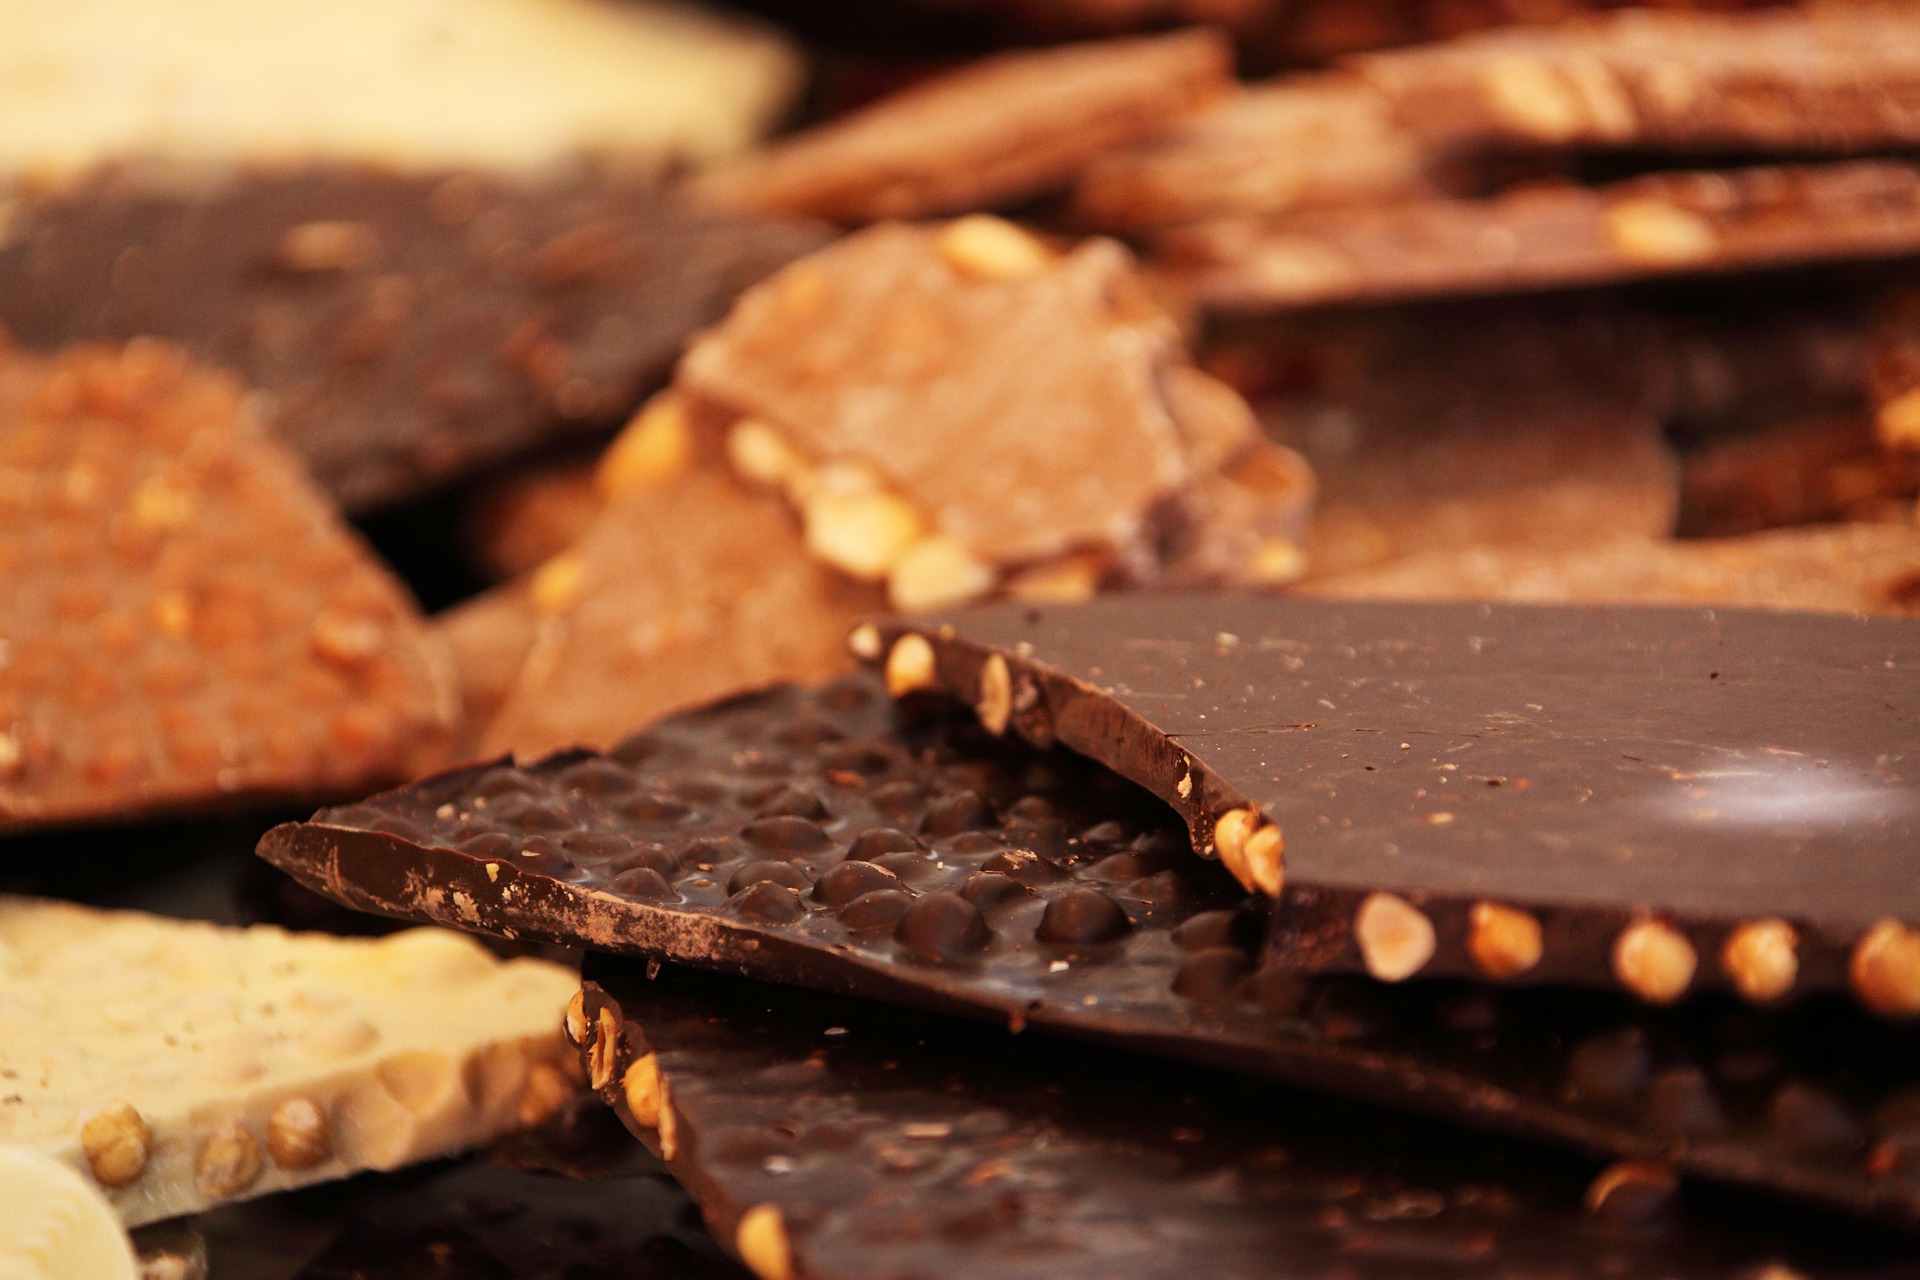 Día del chocolate 2021: 8 datos curiosos sobre el chocolate que te sorprenderán